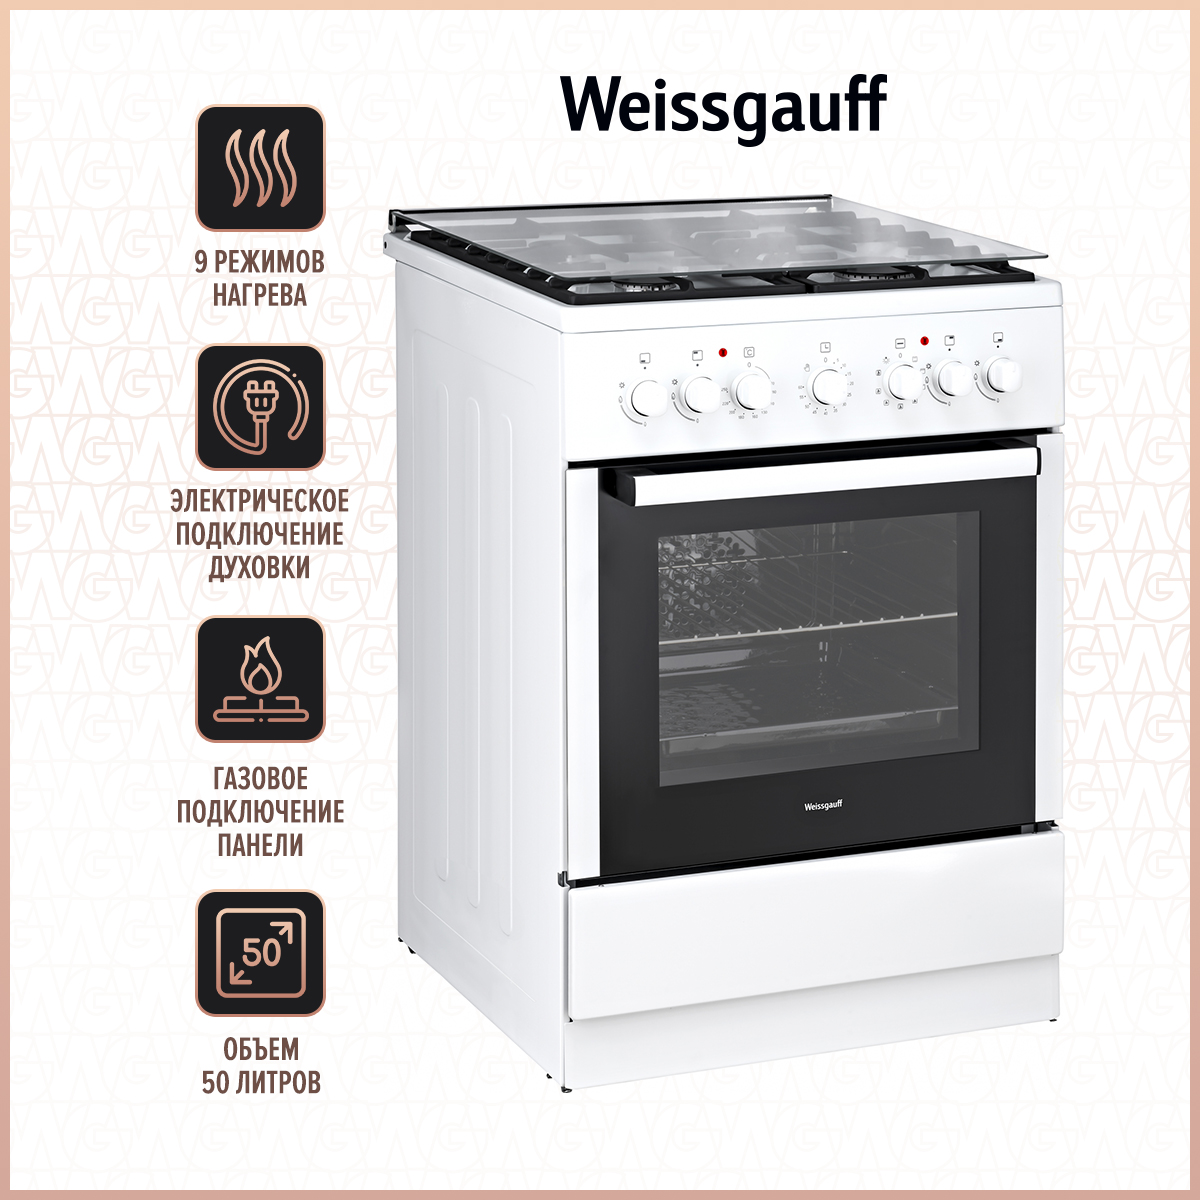 Комбинированная плита Weissgauff WCS K1K62 WGM White комбинированная плита weissgauff wcs k2k59 wge white